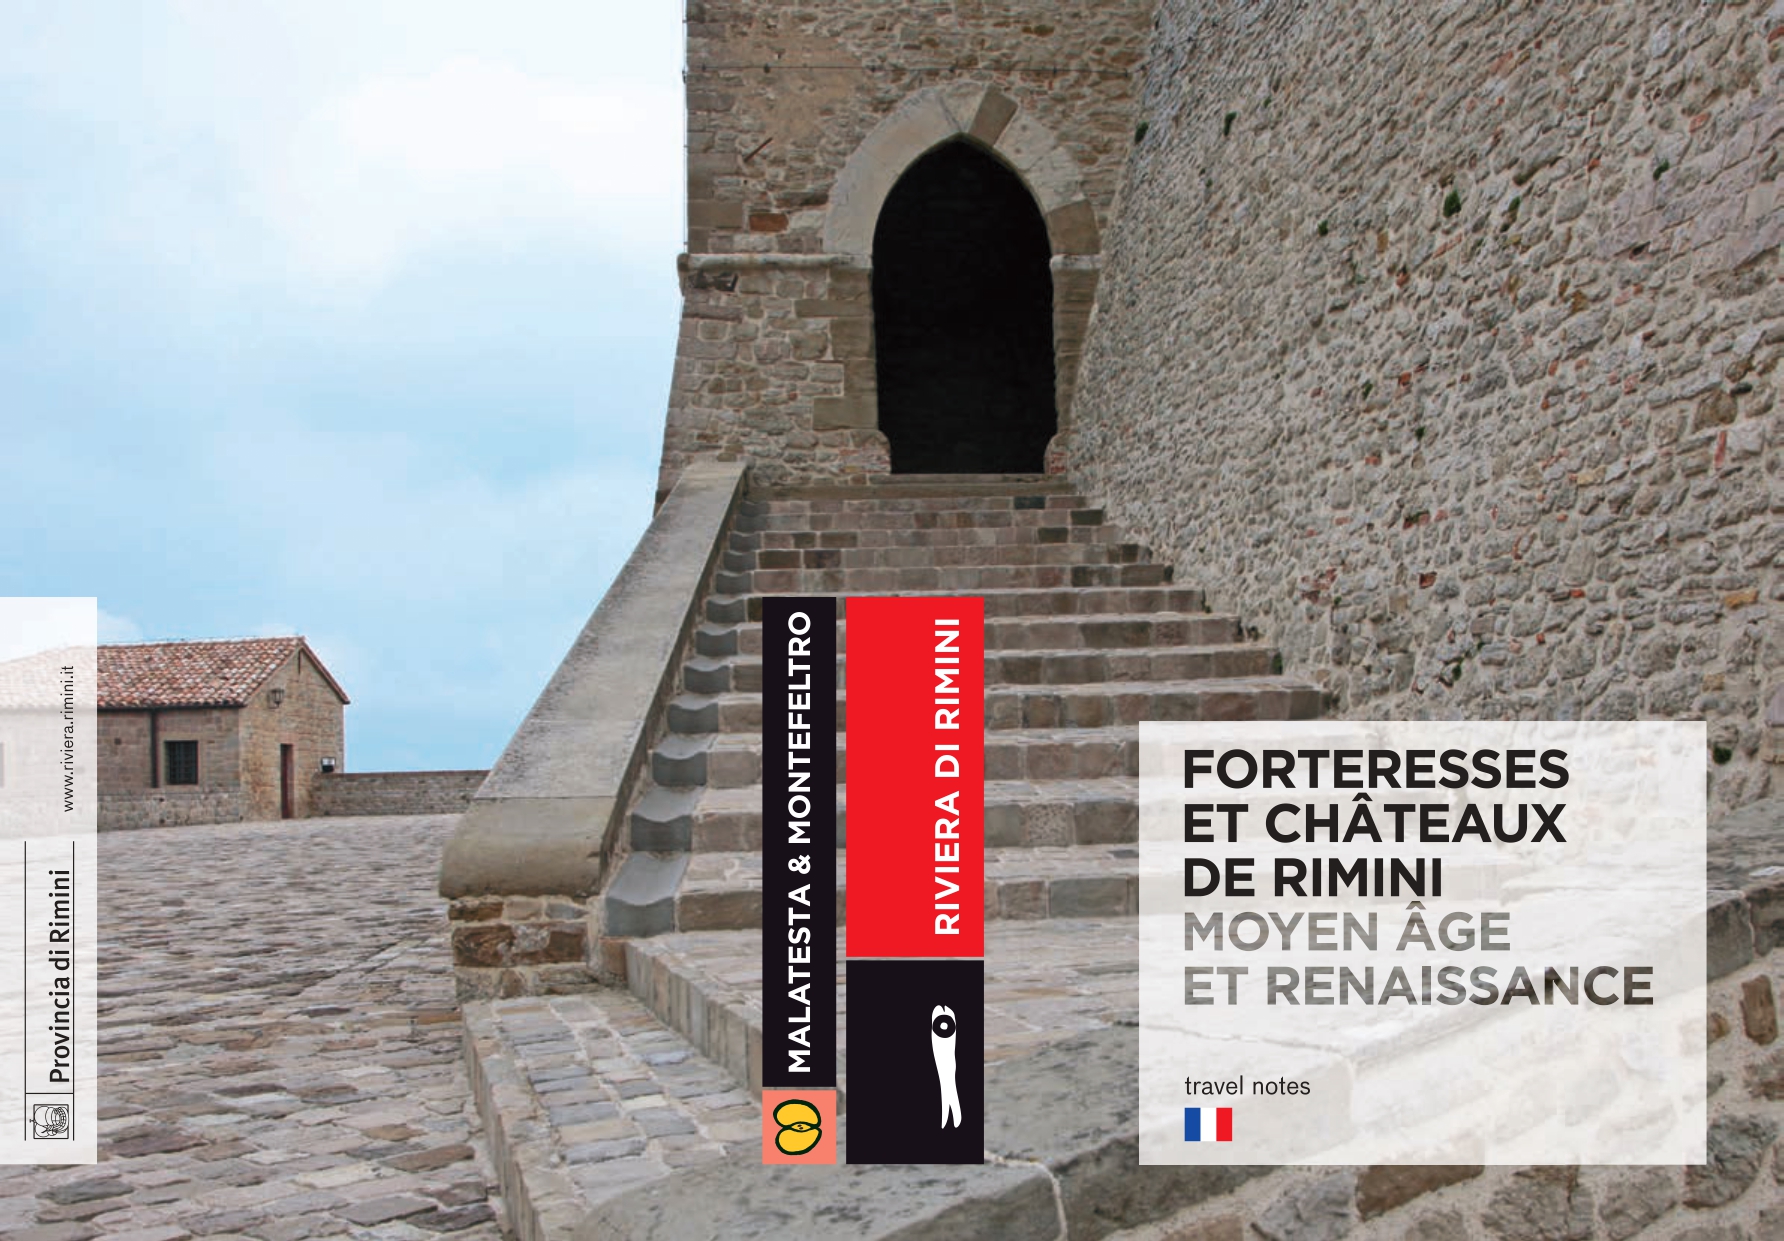 PDF: Fortresses et châteaux de Rimini | Moyen âge et renaissance IT,FR 6.47M